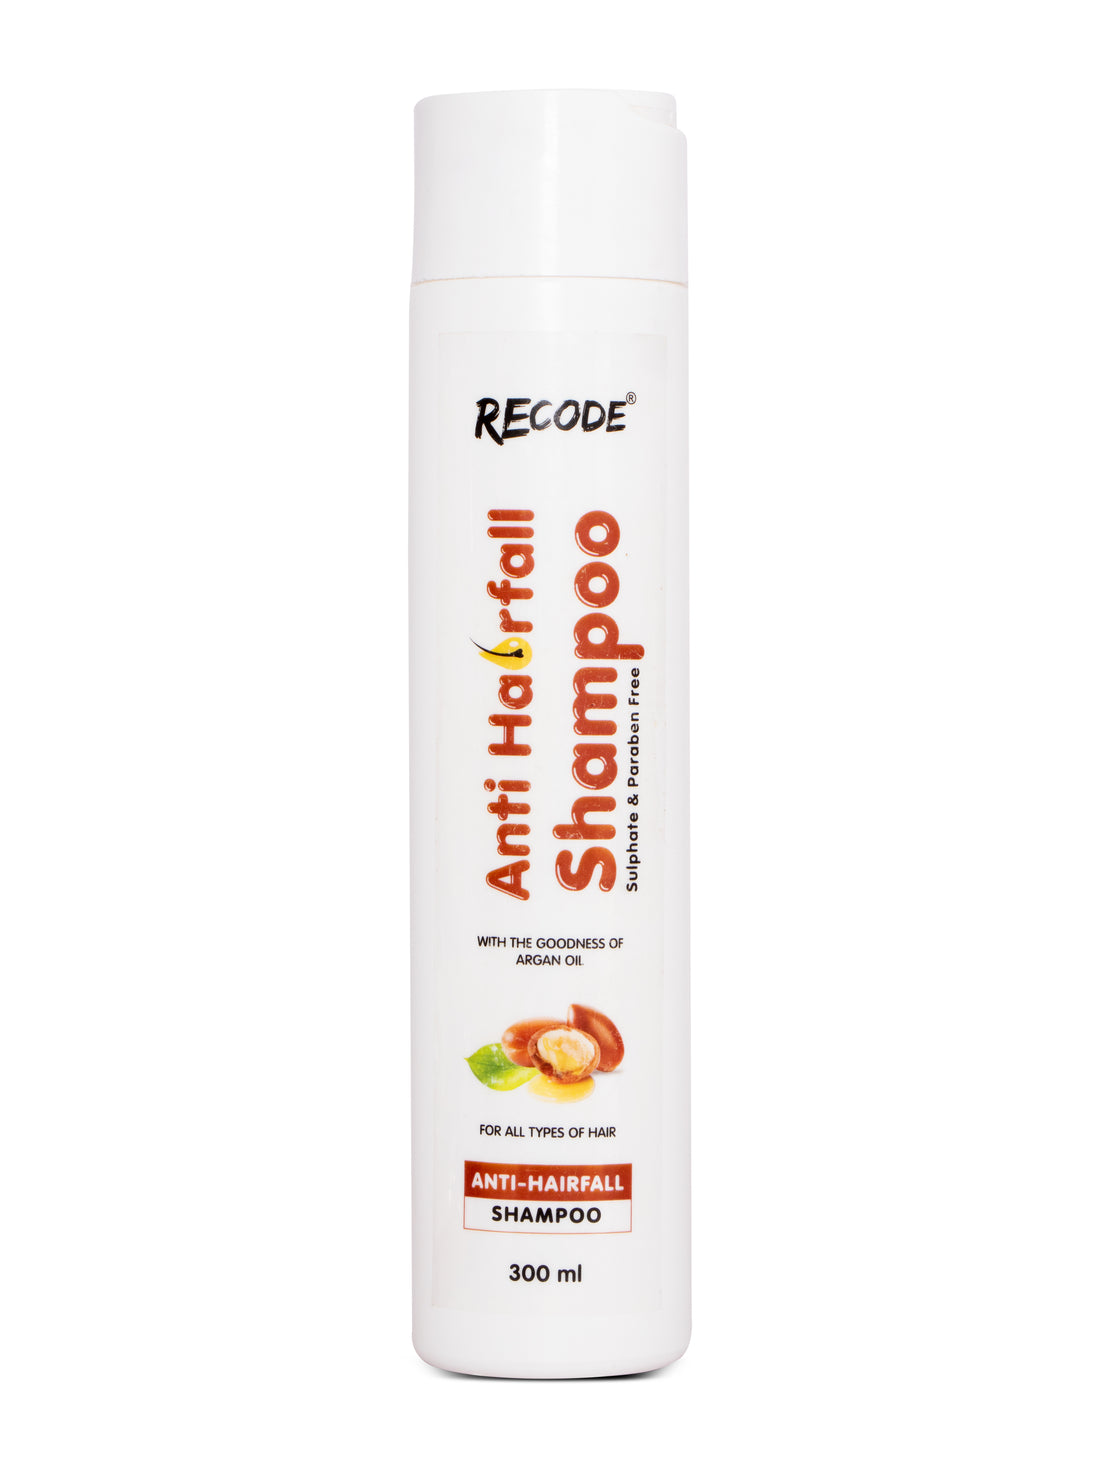 Recode Anti-Hairfall Shampoo - 300ml